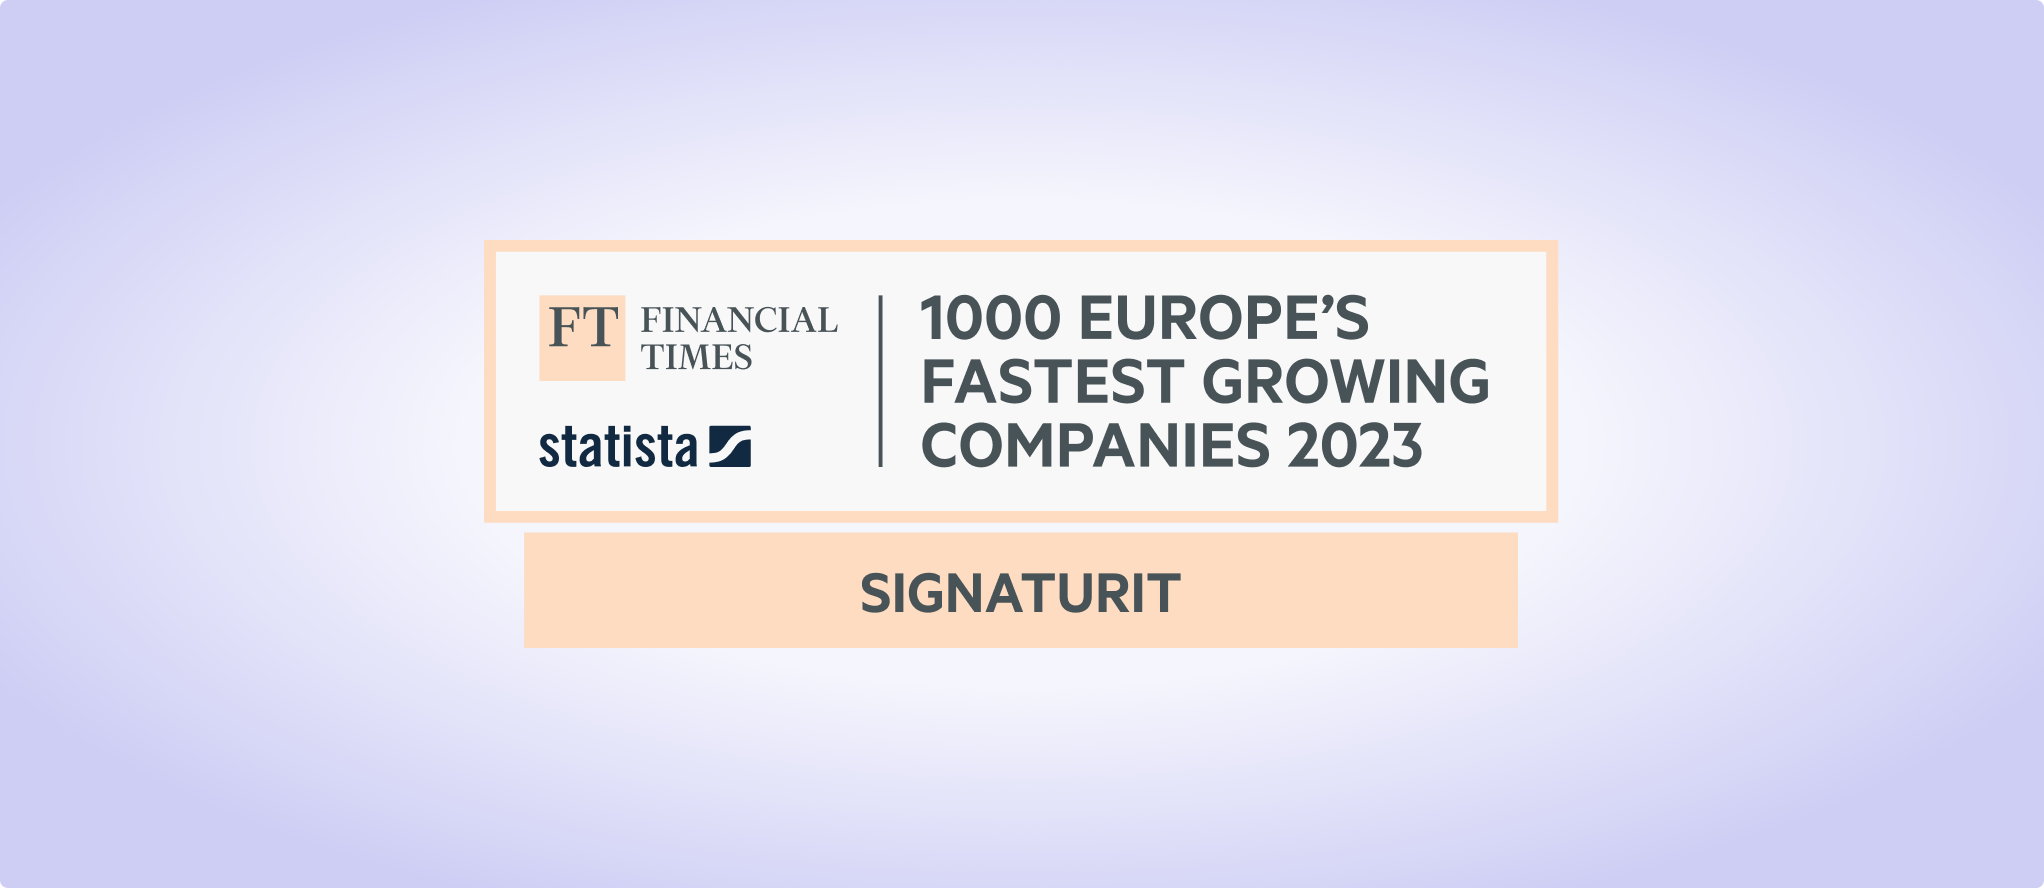 Signaturit est le seul spécialiste de la e-signature du classement FT1000 des entreprises technologiques à forte croissance en Europe